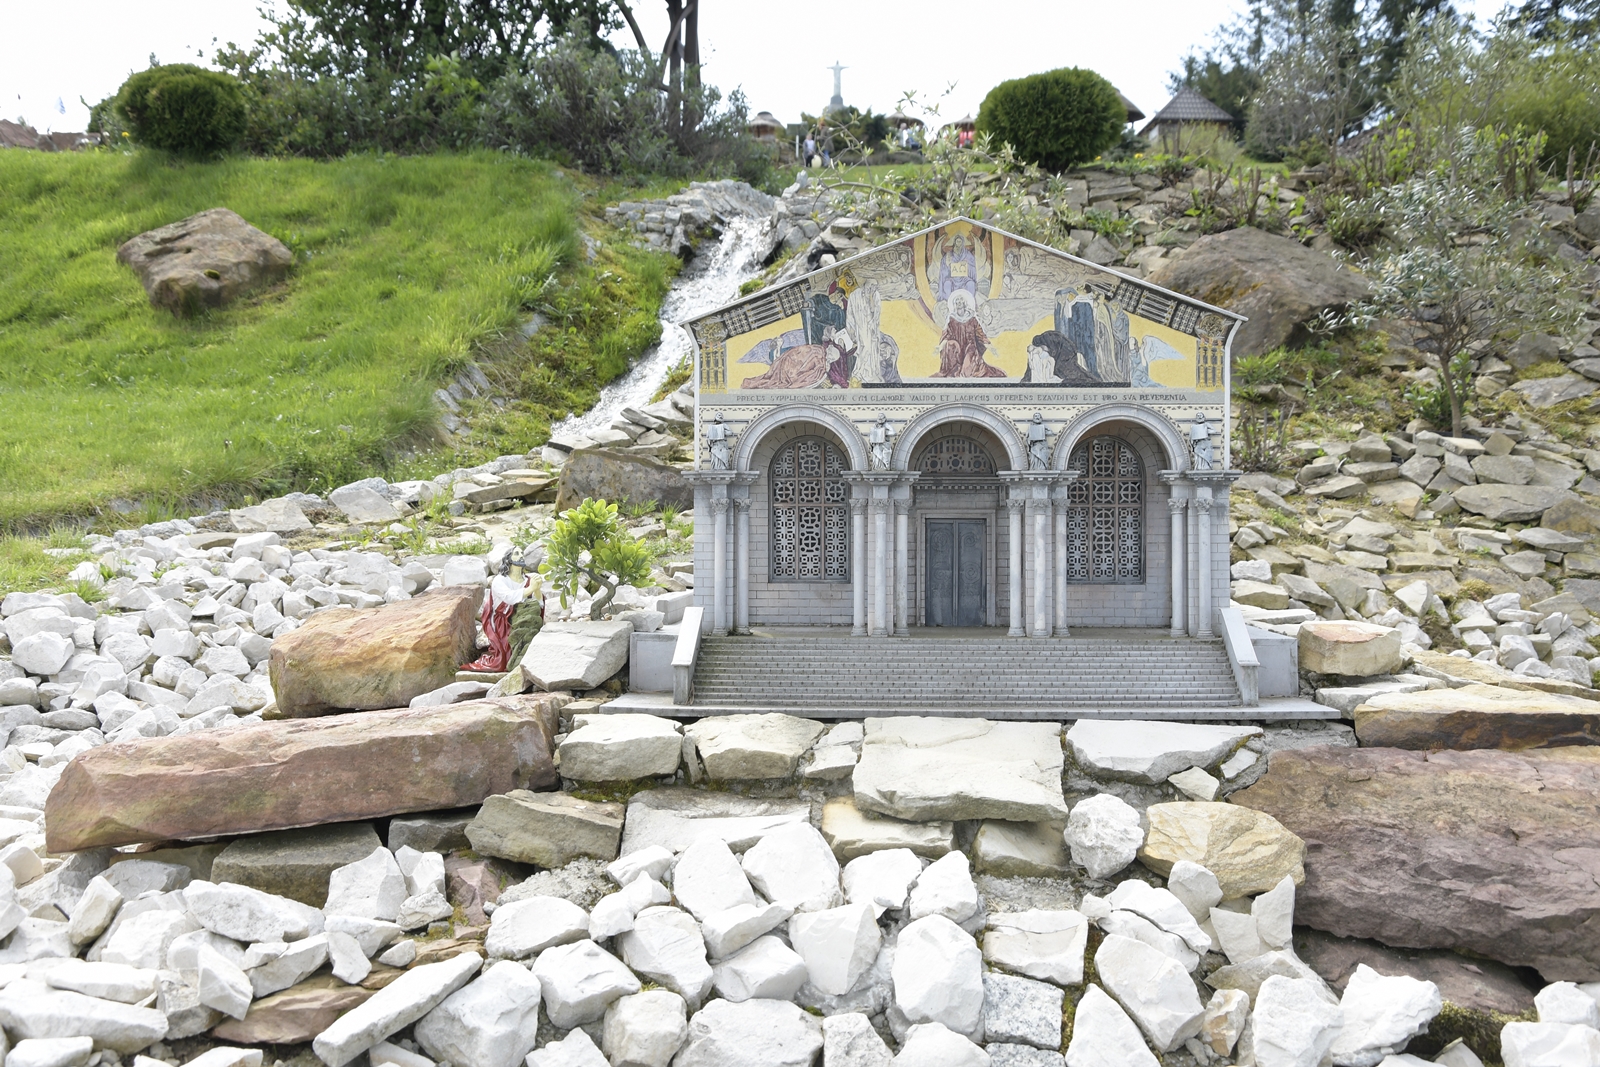 Miniatura jednej z bazylik w parku miniatur, pod nią wyłożona białymi kamyczkami ścieżka.